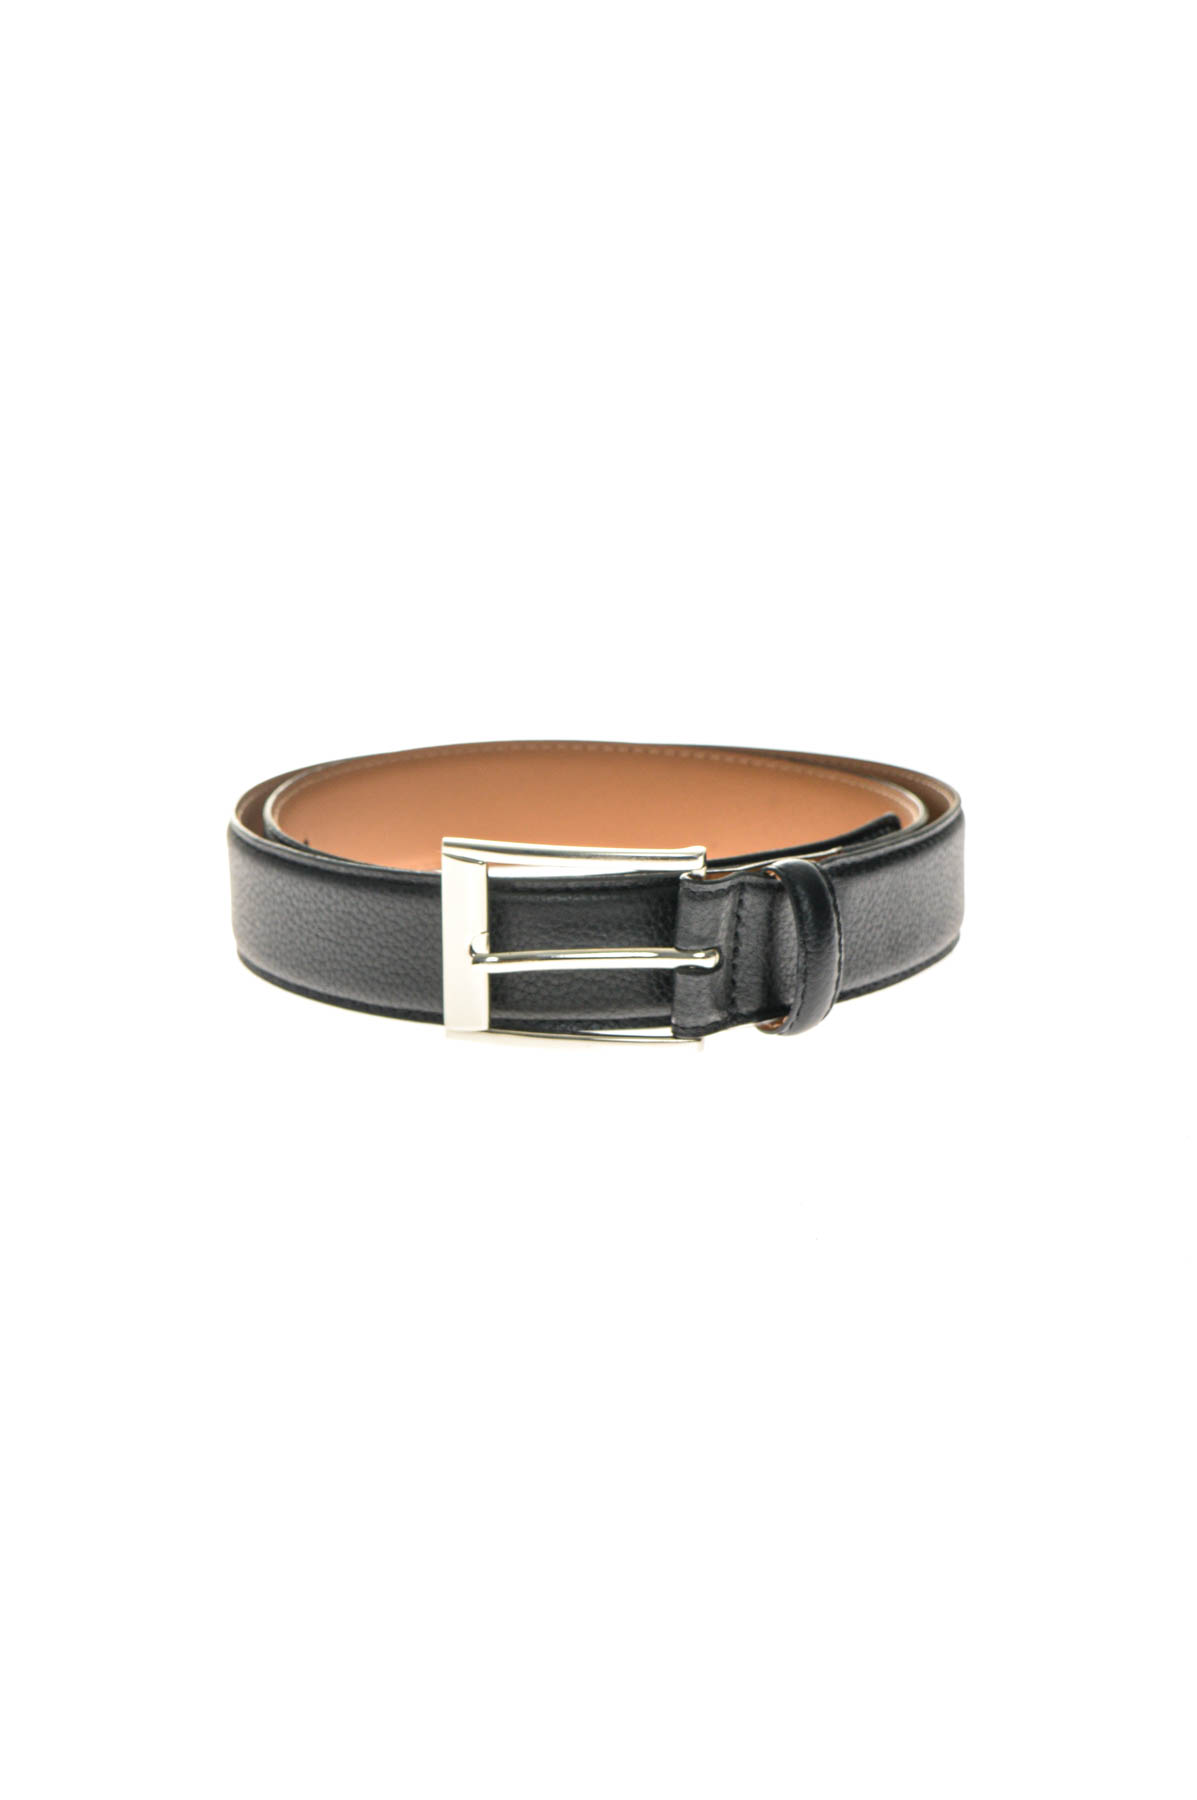 Men's belt - Ahlemeister GmbH - 0